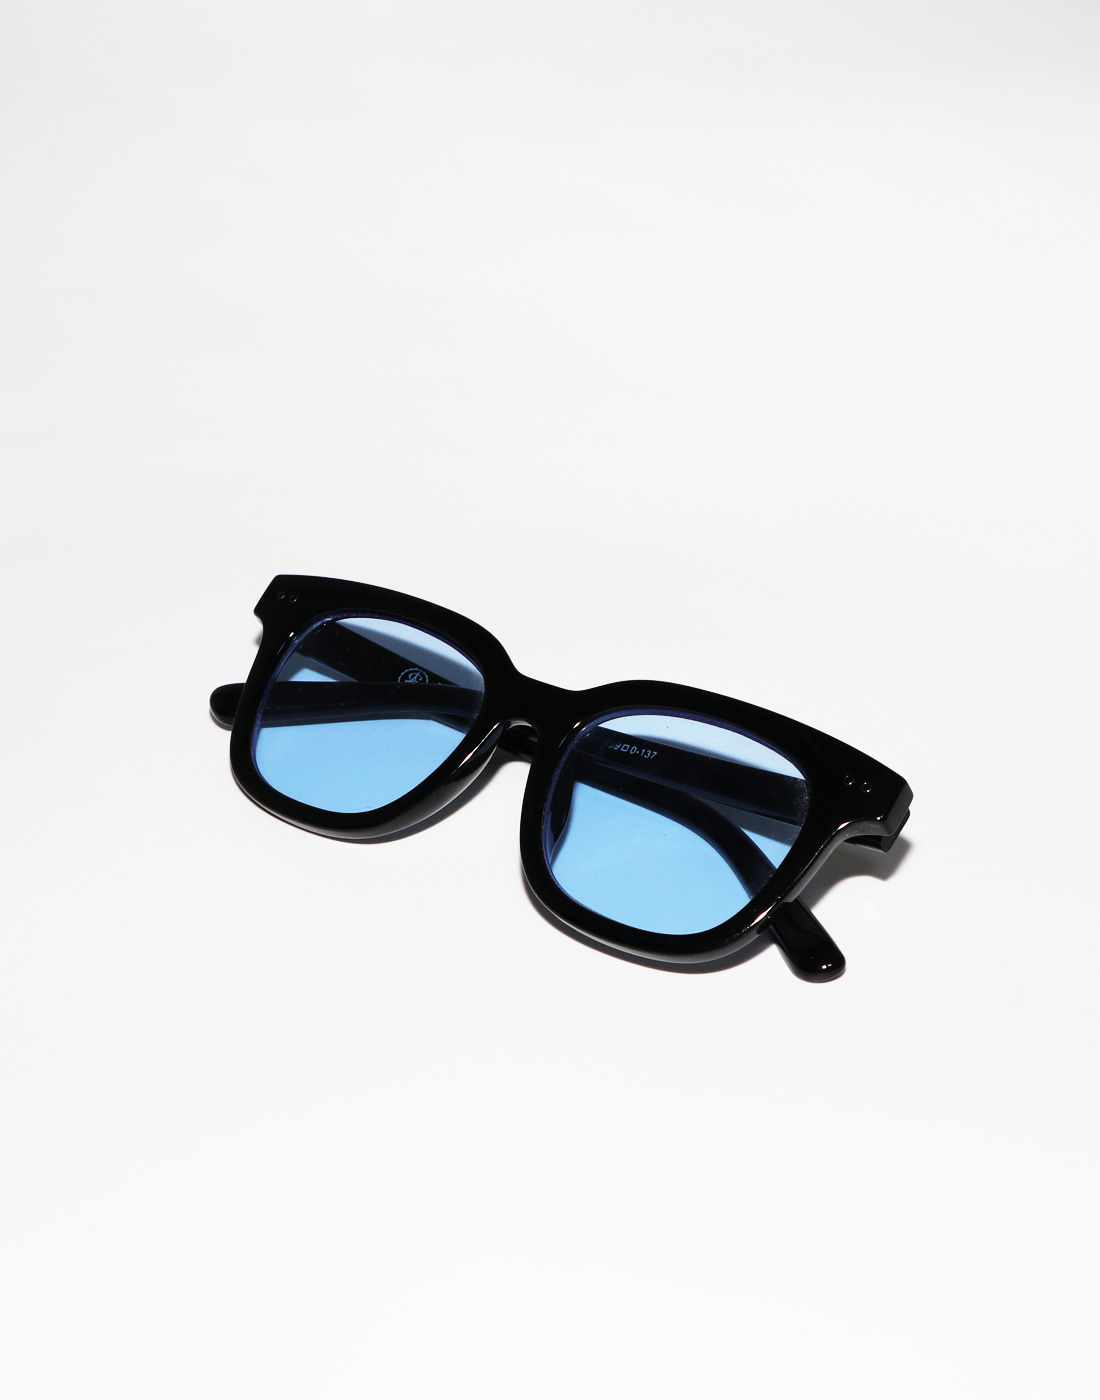 SAINTPAIN Sunglasses, Black